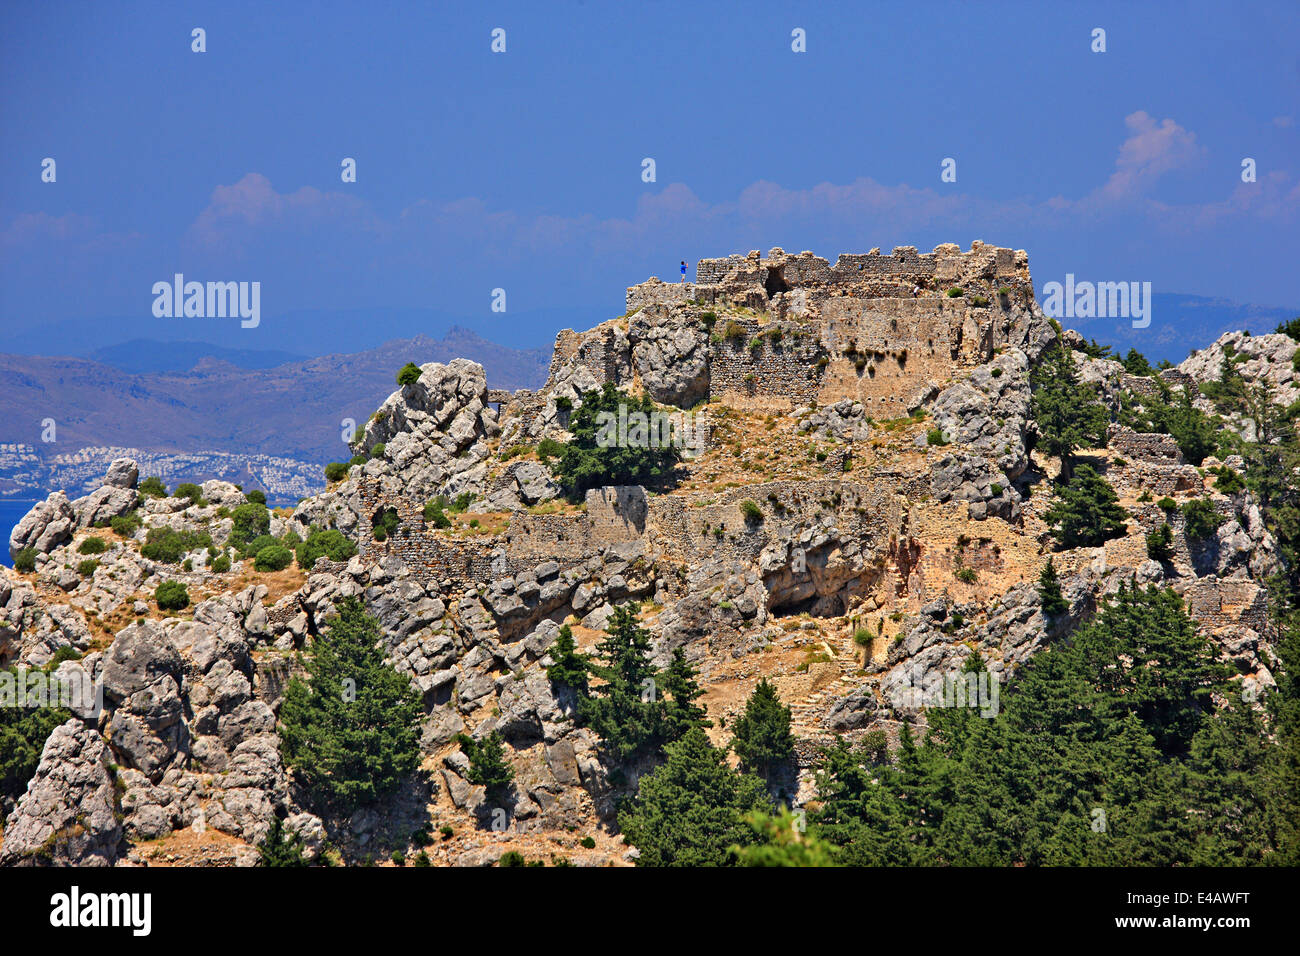 Le Château de Pyli surplombant le détroit entre l'île de Kos et la côte turque (en arrière-plan). Dodécanèse, Grèce. Banque D'Images